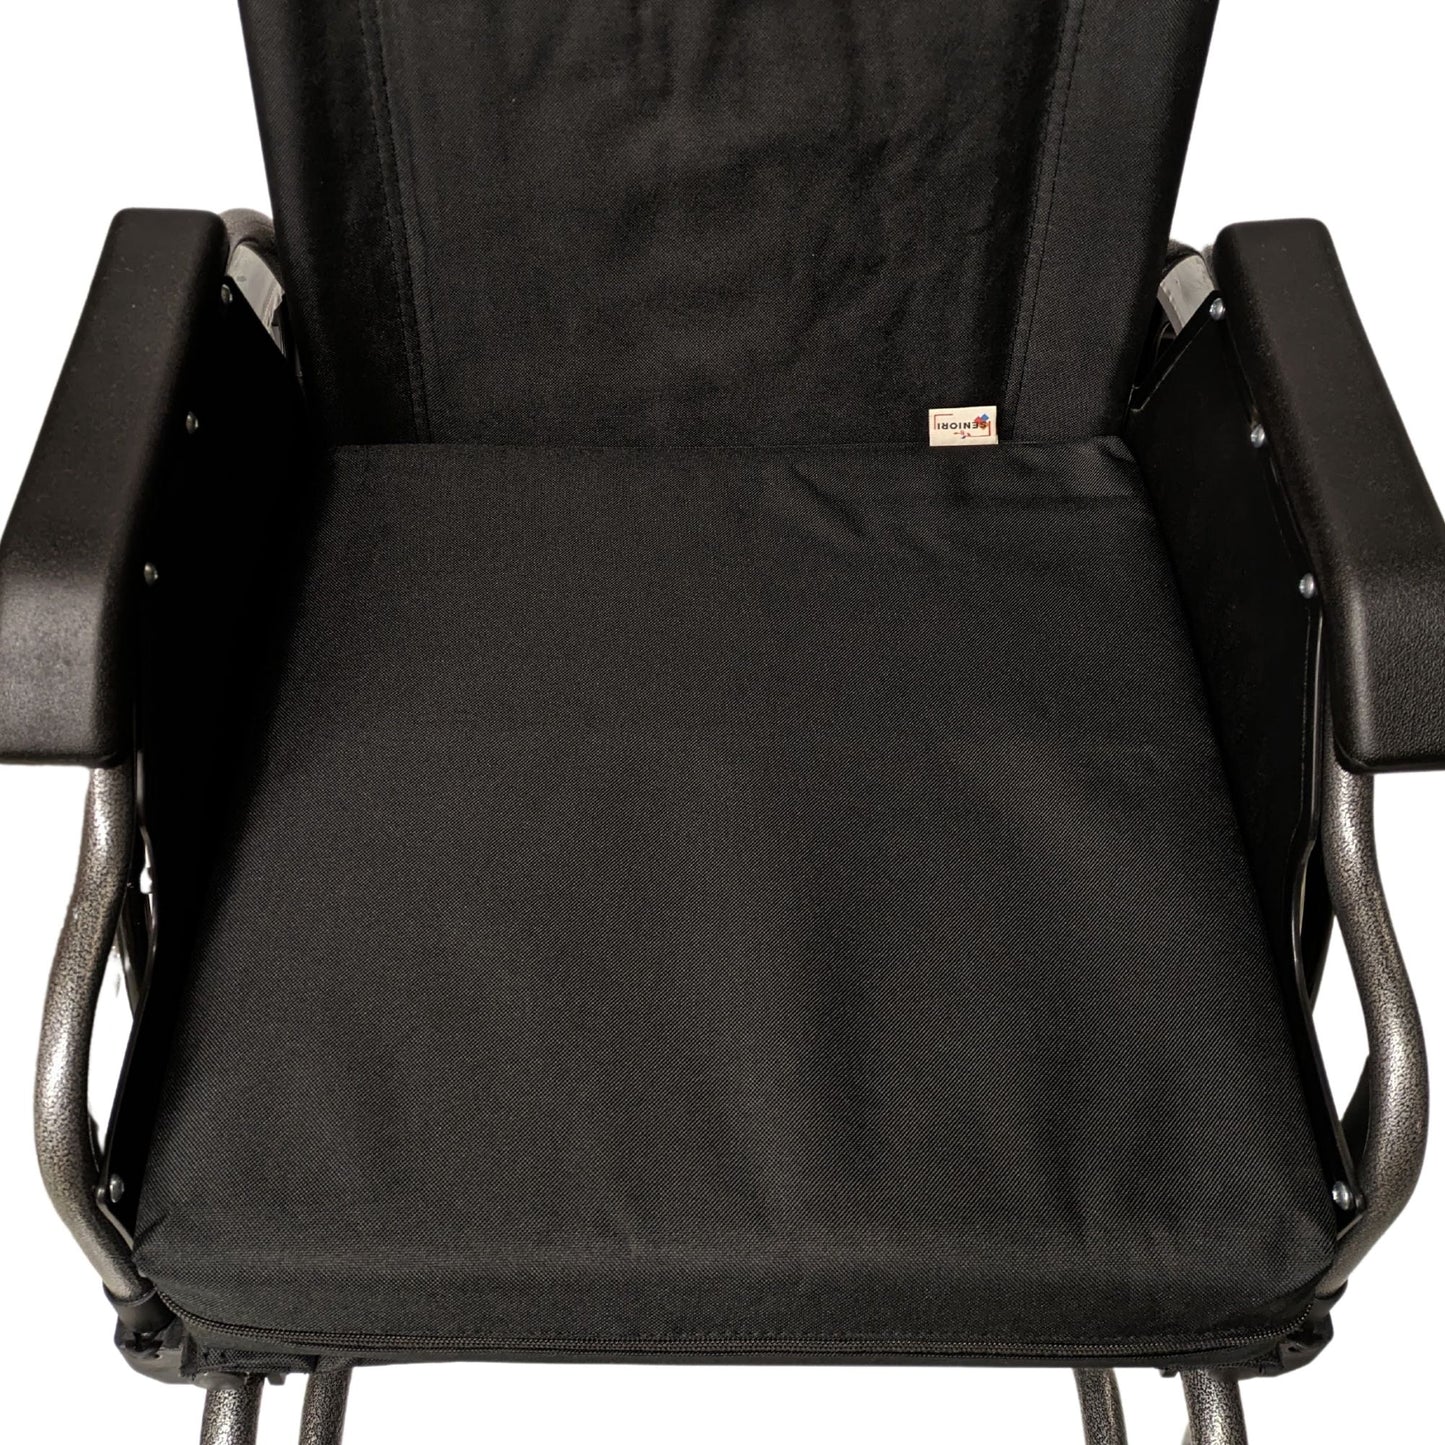 SENIORI Rollstuhlkissen Sitzkissen für Rollstuhl Sitzerhöhungv 42 x 42 x 8 cm Antidekubitus Kissen mit doppelter Schaumstoffschicht (2K. Schwarz)